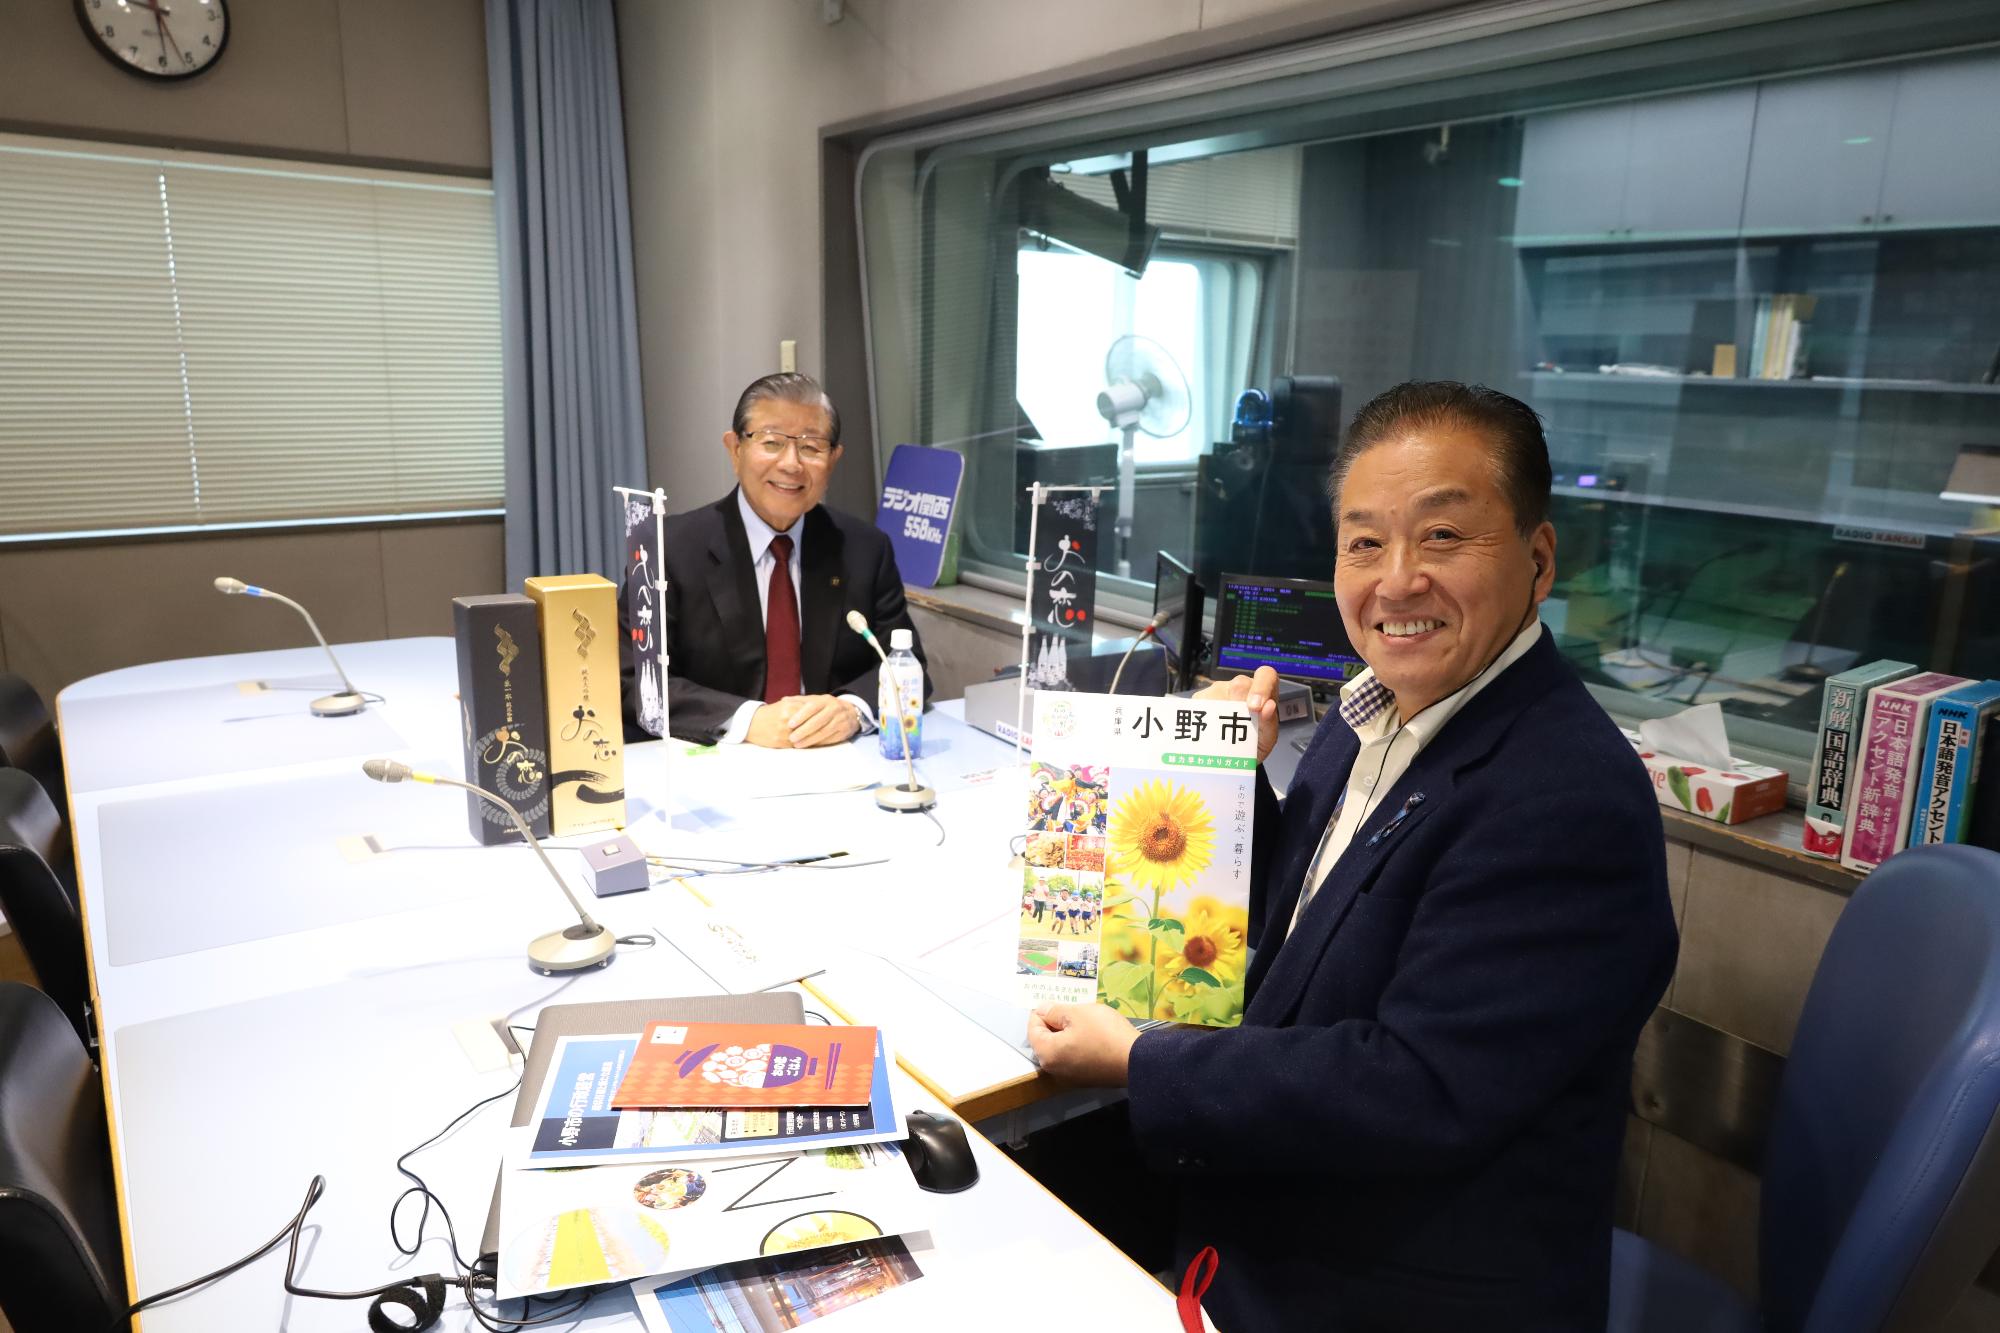 ラジオ関西における三上欣也さんと市長との収録風景1